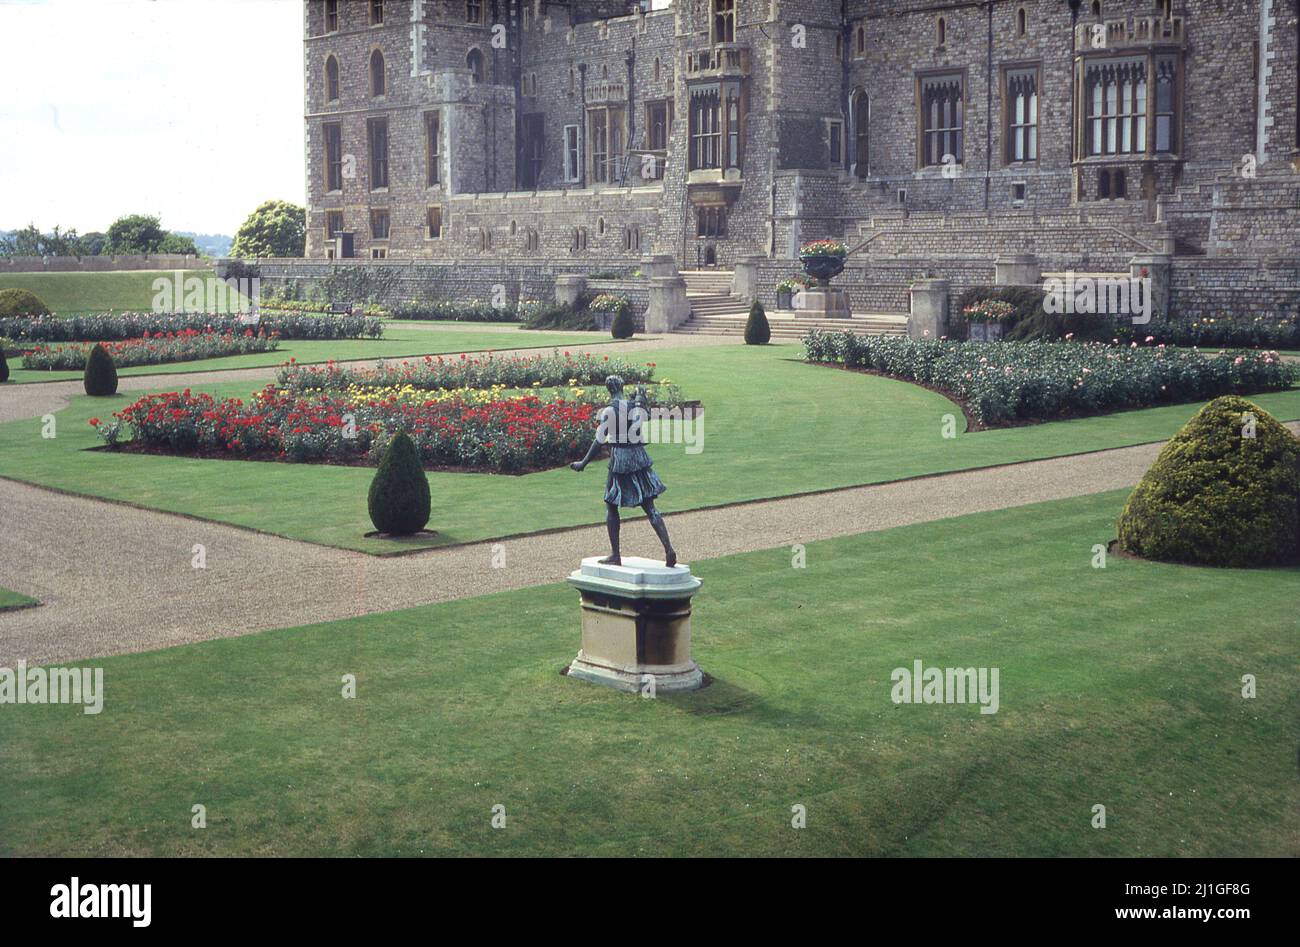 1960s, historischer, formeller Garten im Windsor Castle, einer historischen königlichen Residenz in Windsor-Bekshire, England, Großbritannien. Bekannt als der East Terrace Garden, wurde er ursprünglich für König George IV. Geschaffen, der, als er 1820 auf den Thron kam und da es keinen privaten Garten gab, aus ehemaligen Bowlingbahnen entstand. An bestimmten Tagen in den Sommermonaten ist eine begrenzte Anzahl von Besuchern in den Schlossgarten erlaubt. Stockfoto